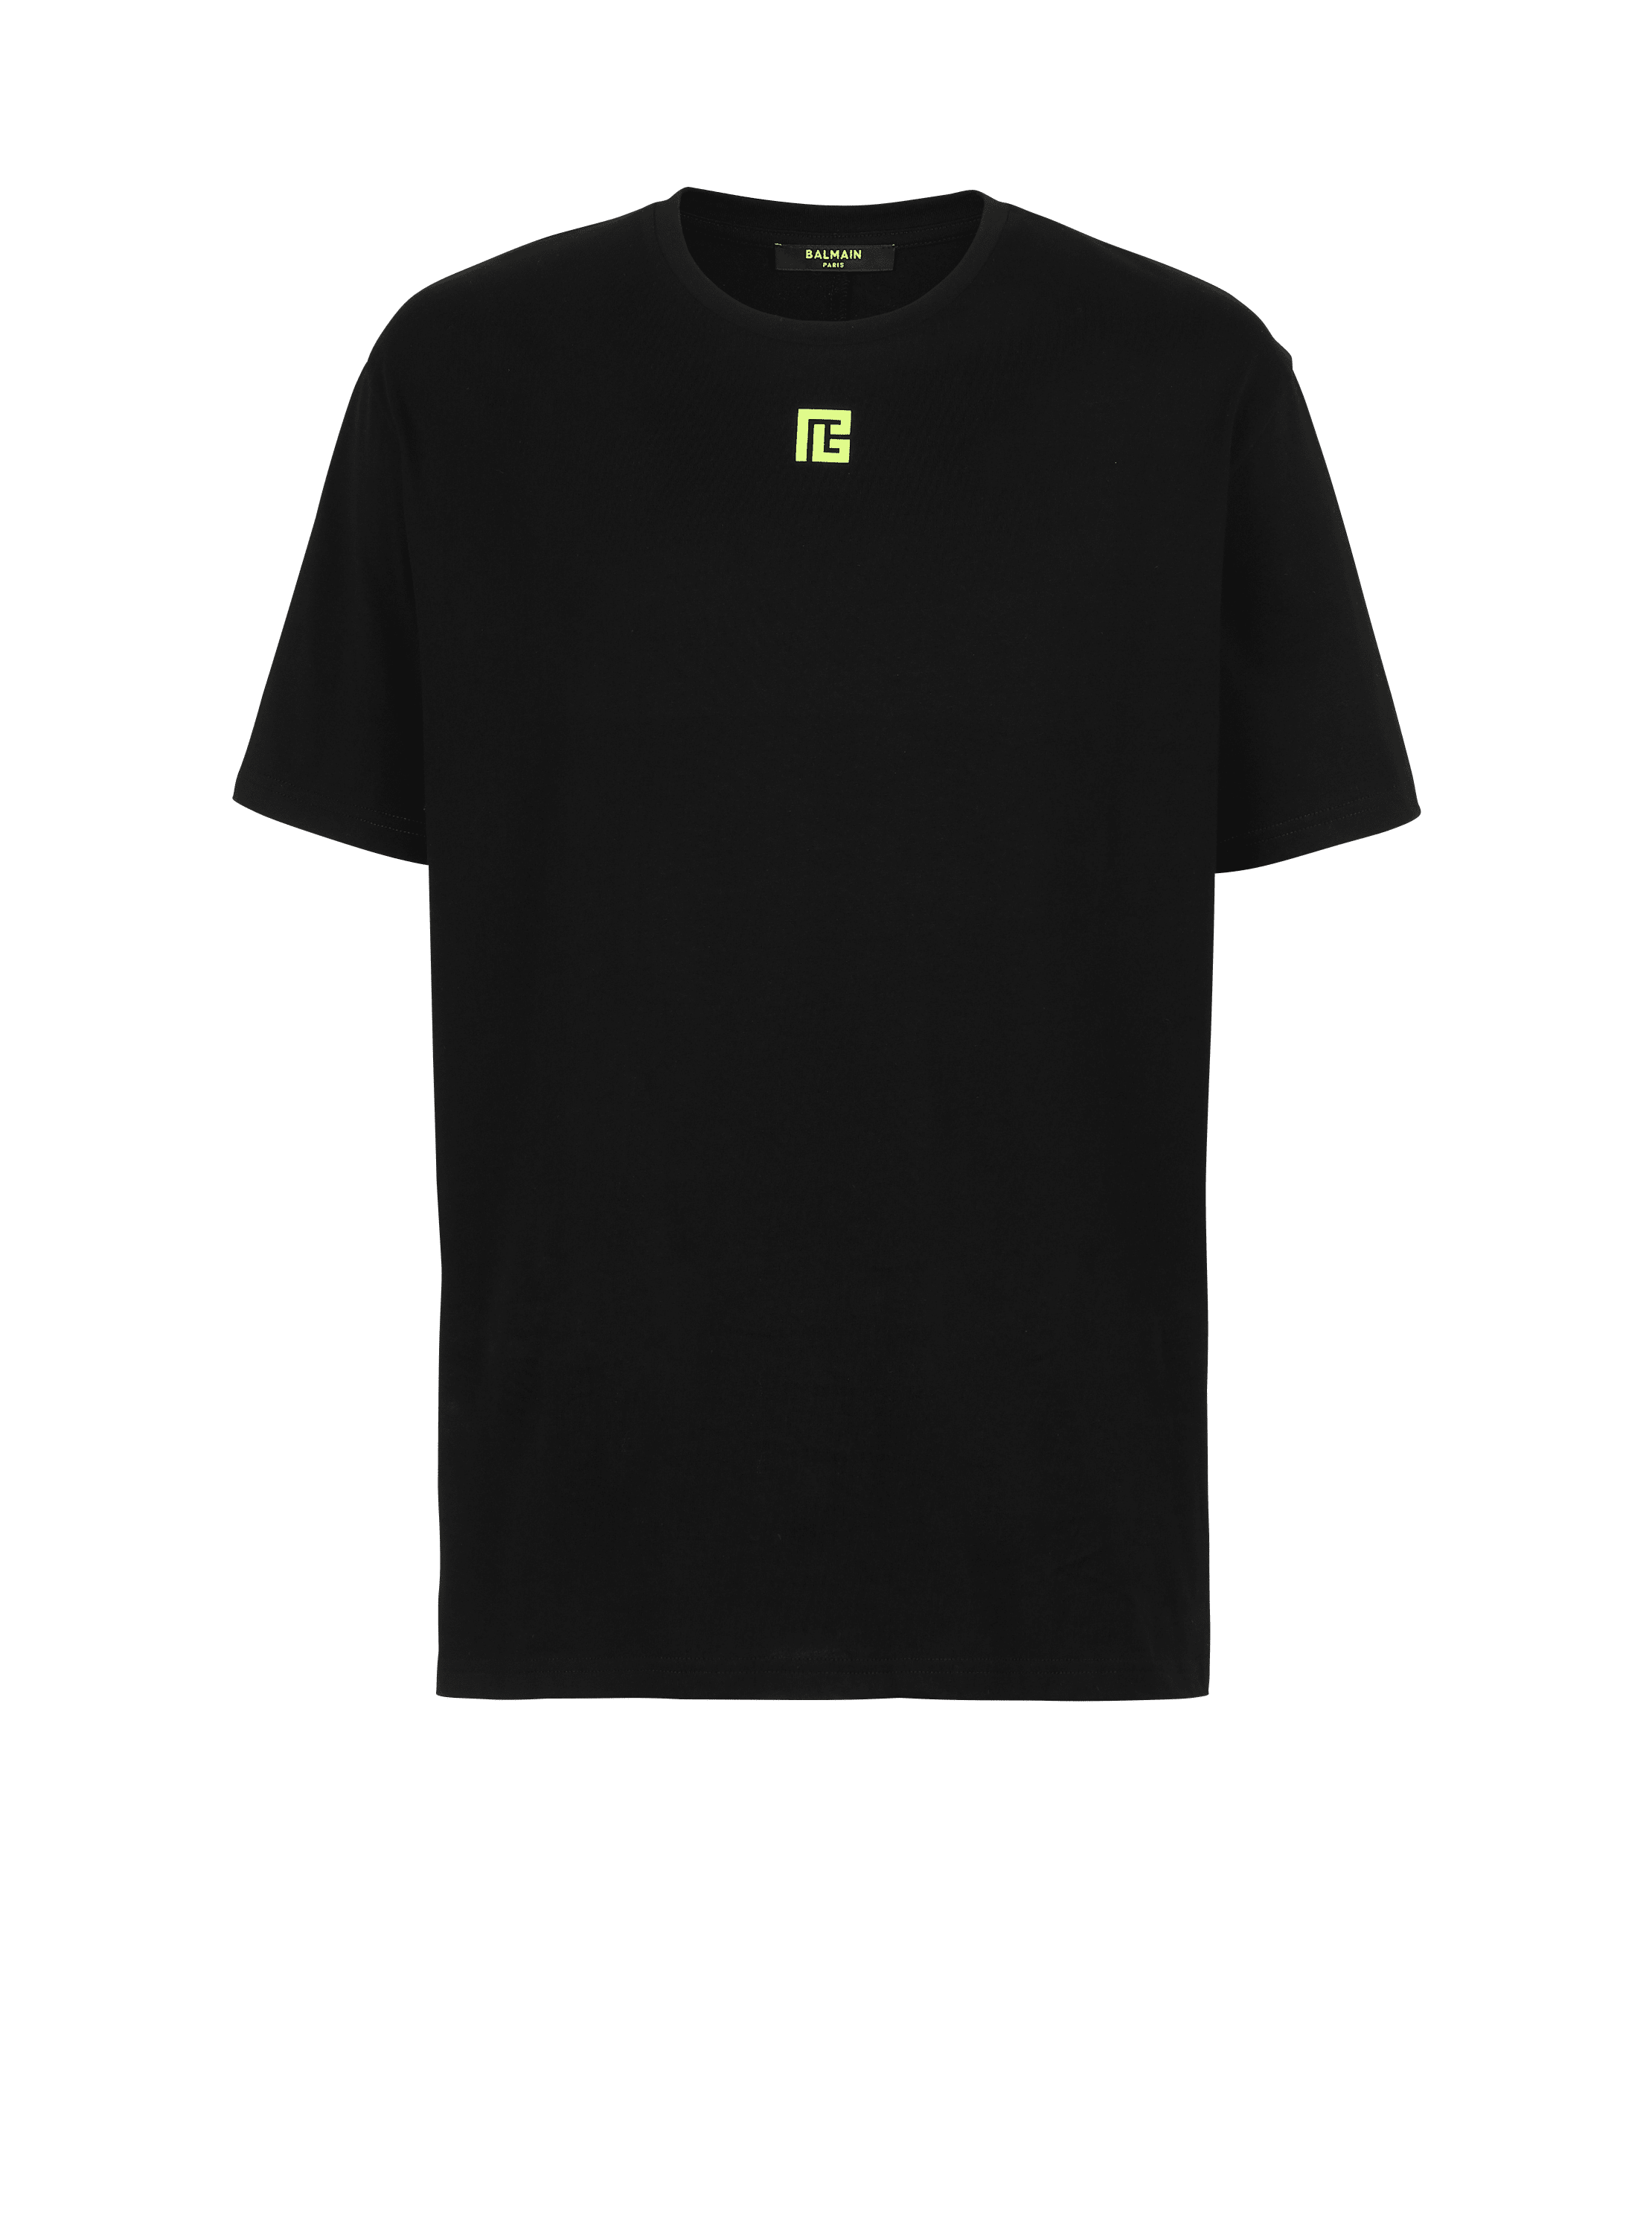 Camiseta oversize de algodón con maxilogotipo de Balmain estampado en la espalda, negro, hi-res